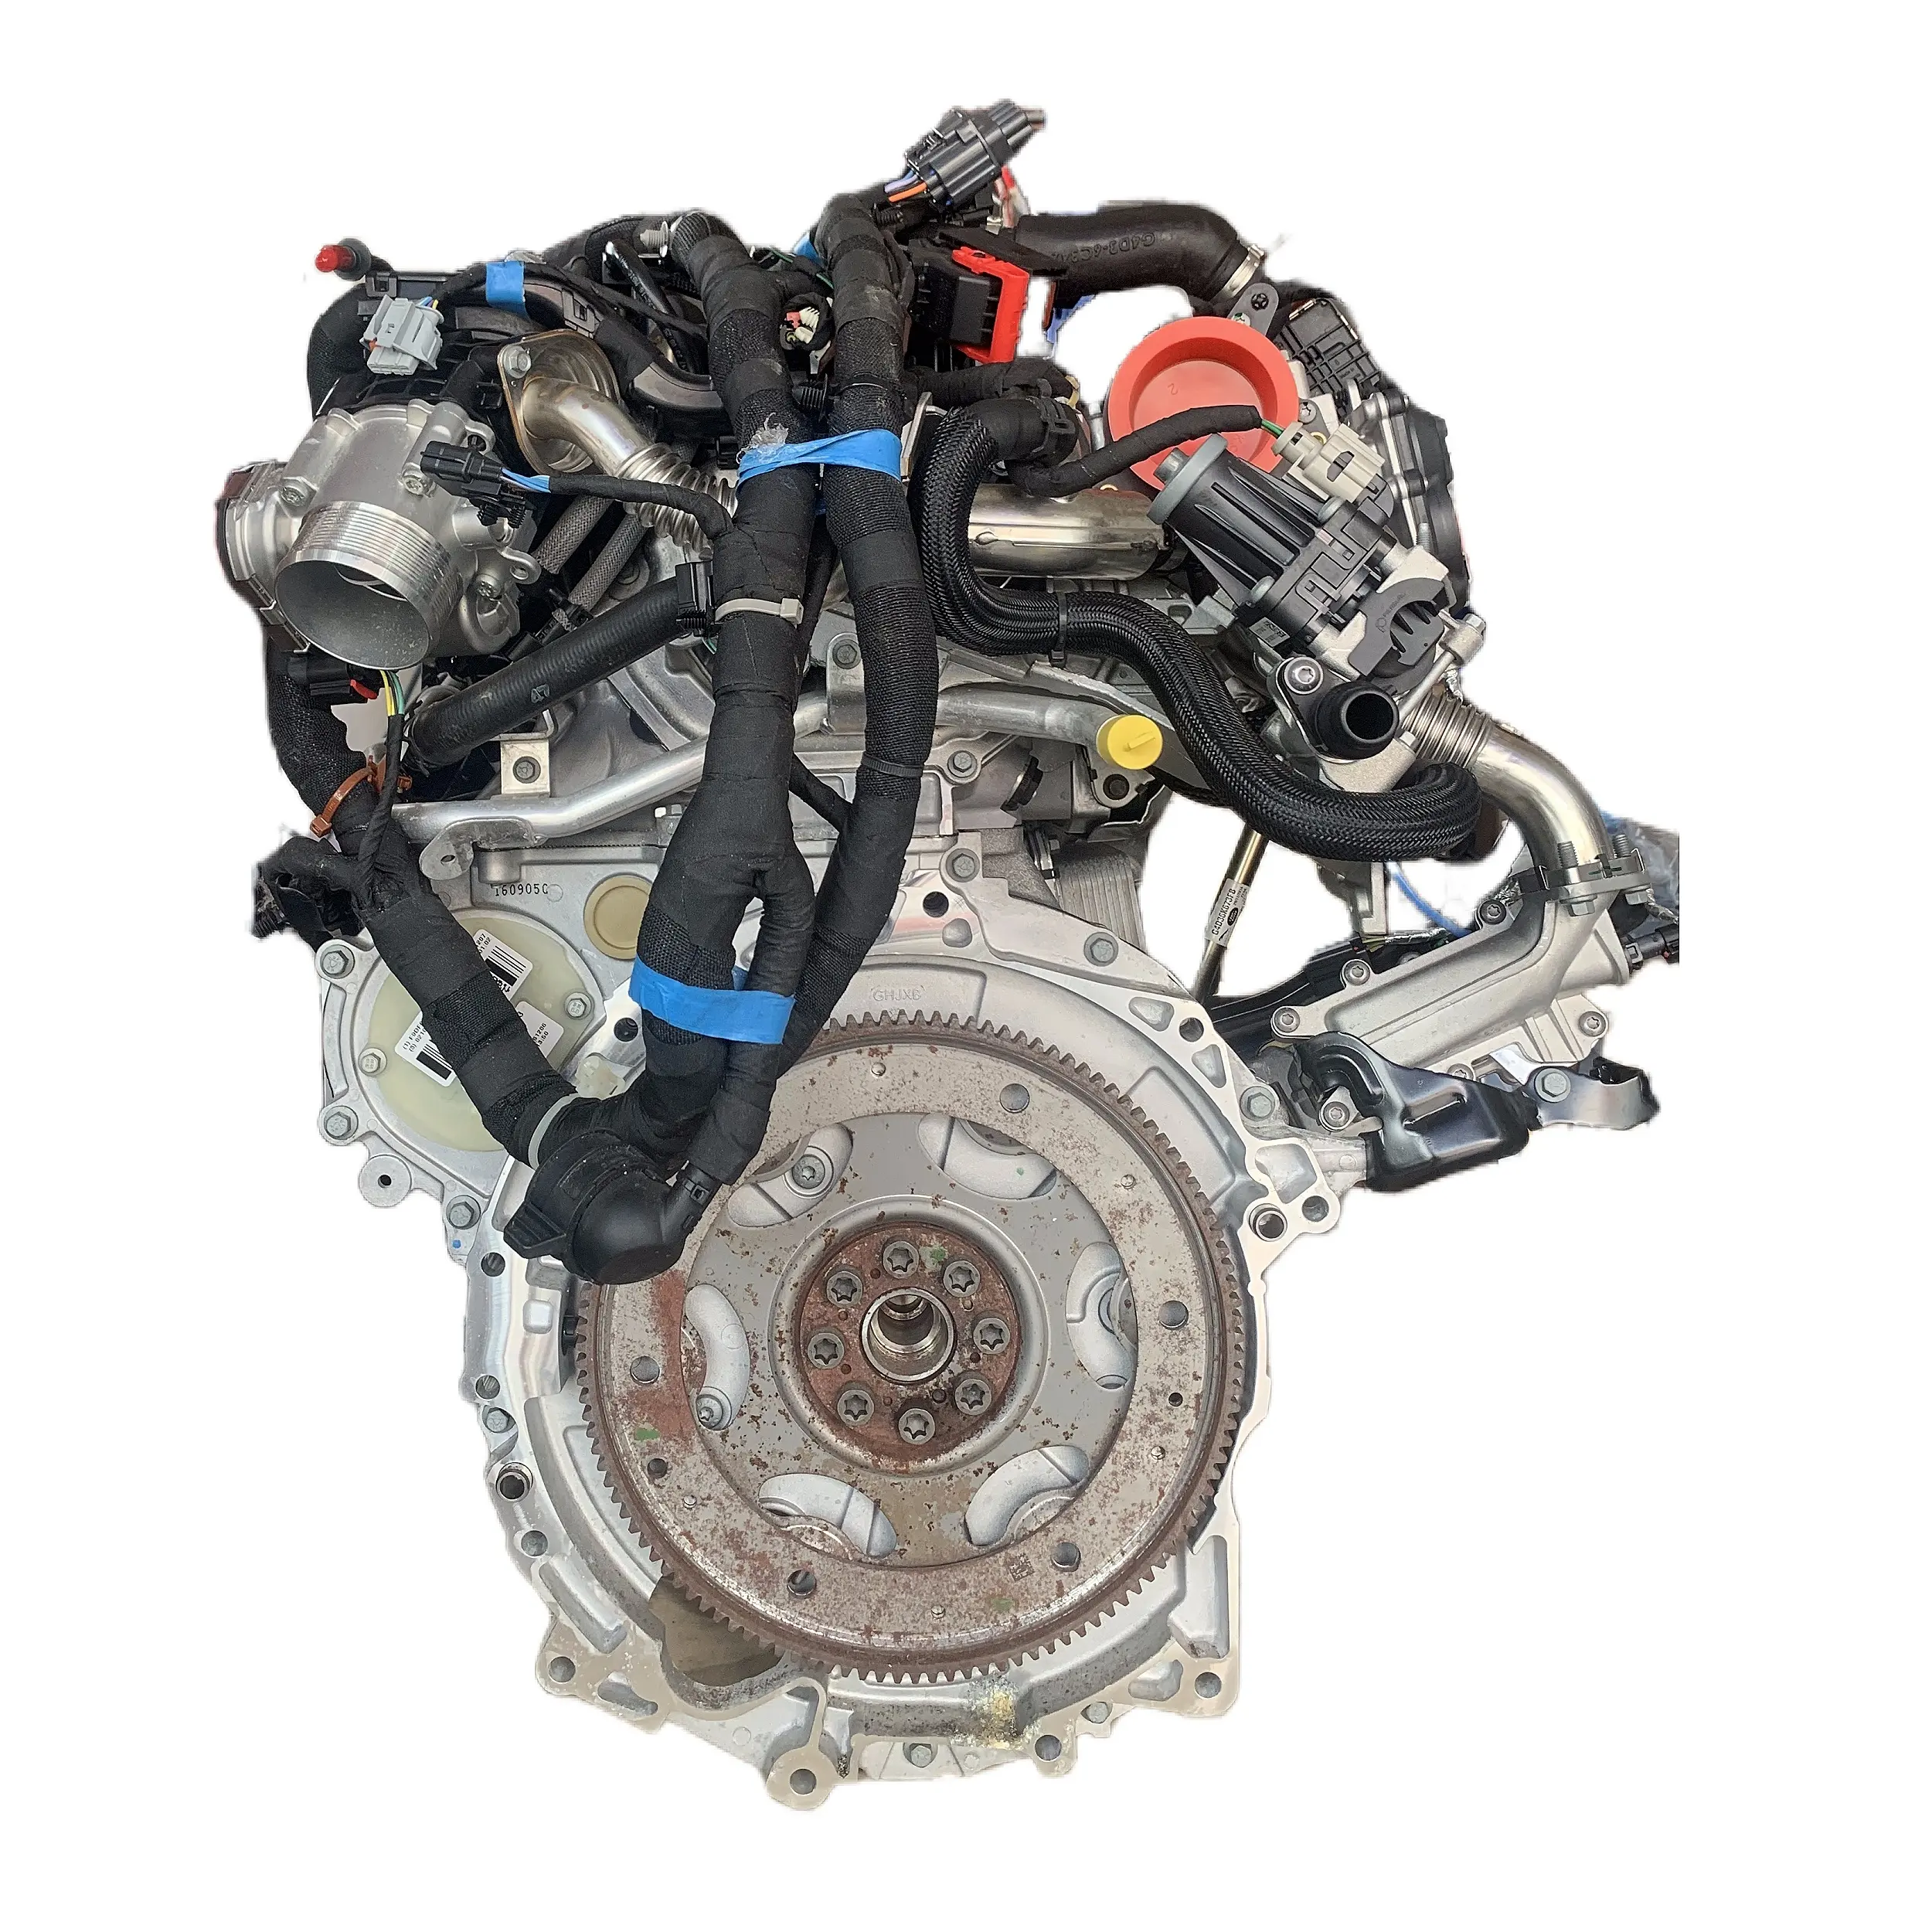 Venta al por mayor nuevo motor diésel 204dta GTDI Range Rover Sports Discovery 5 para land rover